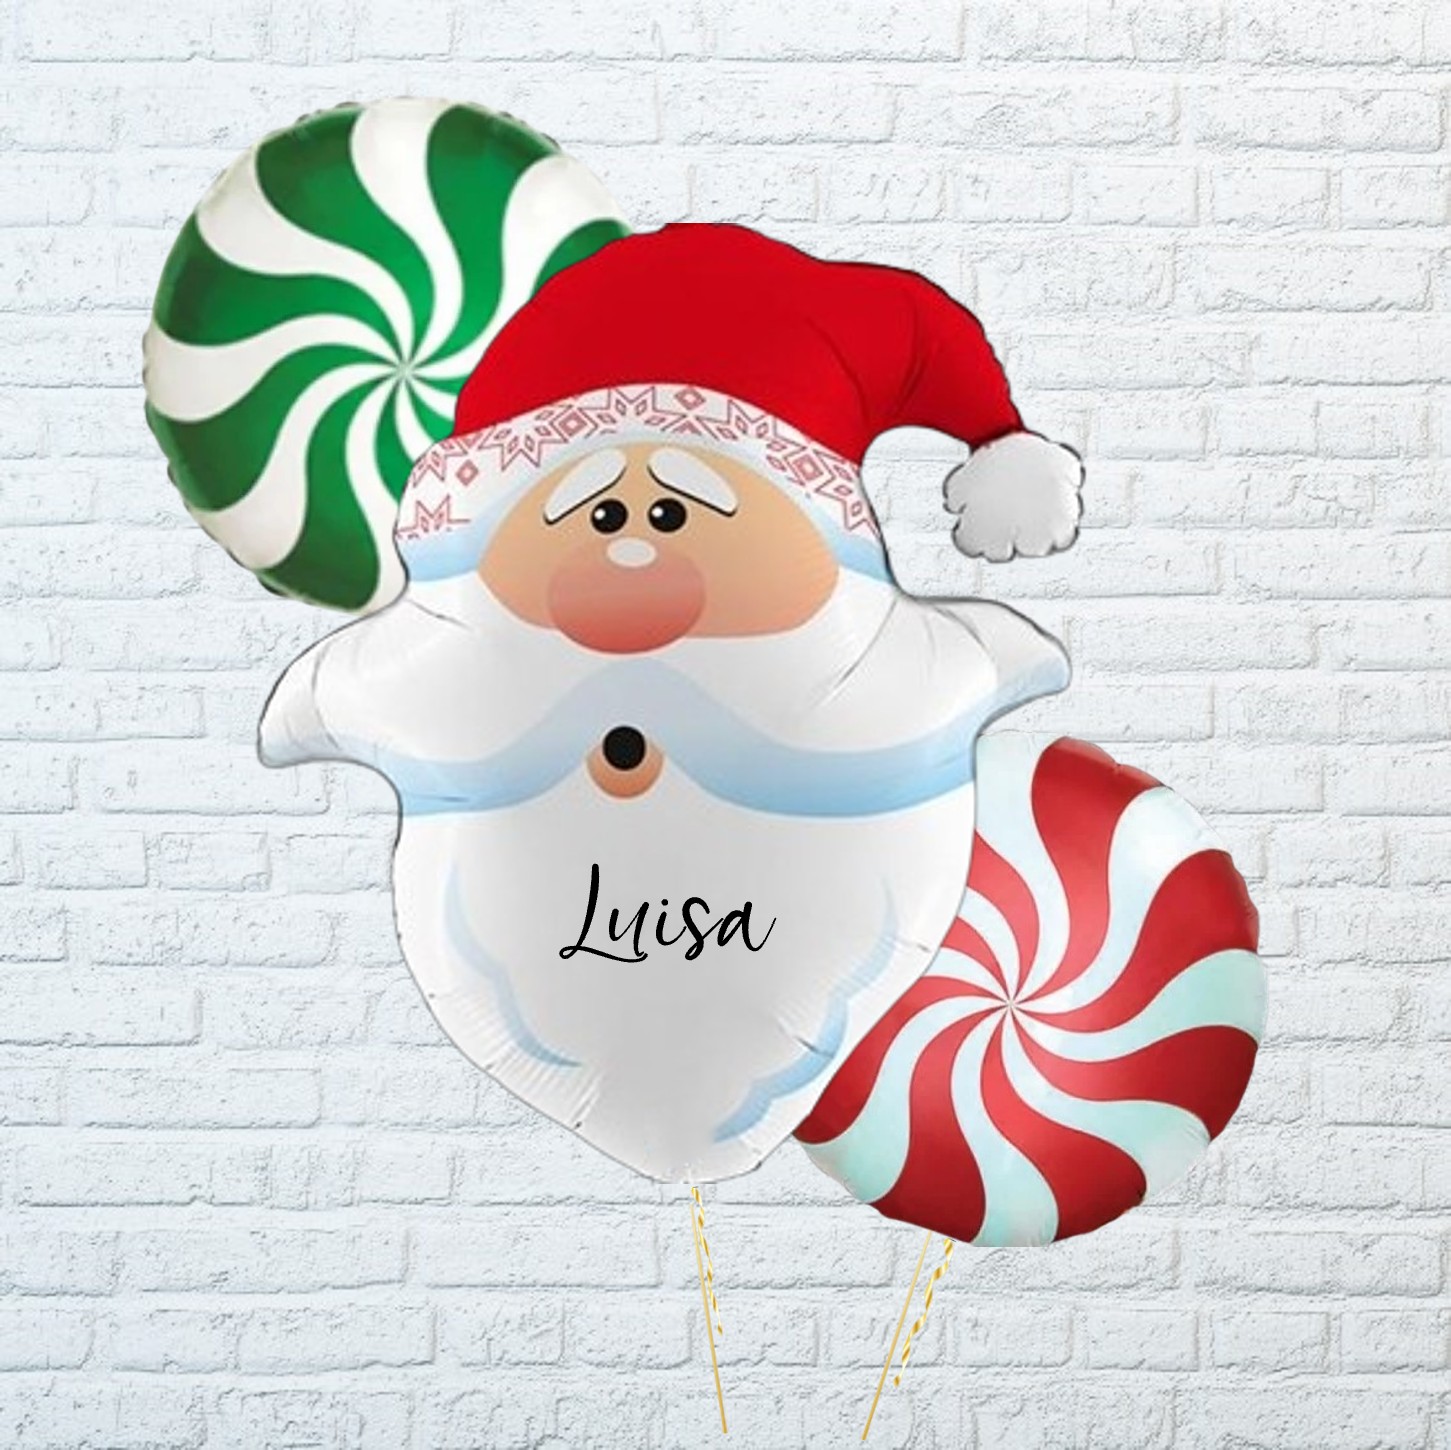 Comprar ramo de globos con helio para regalar en navidad en la coruña